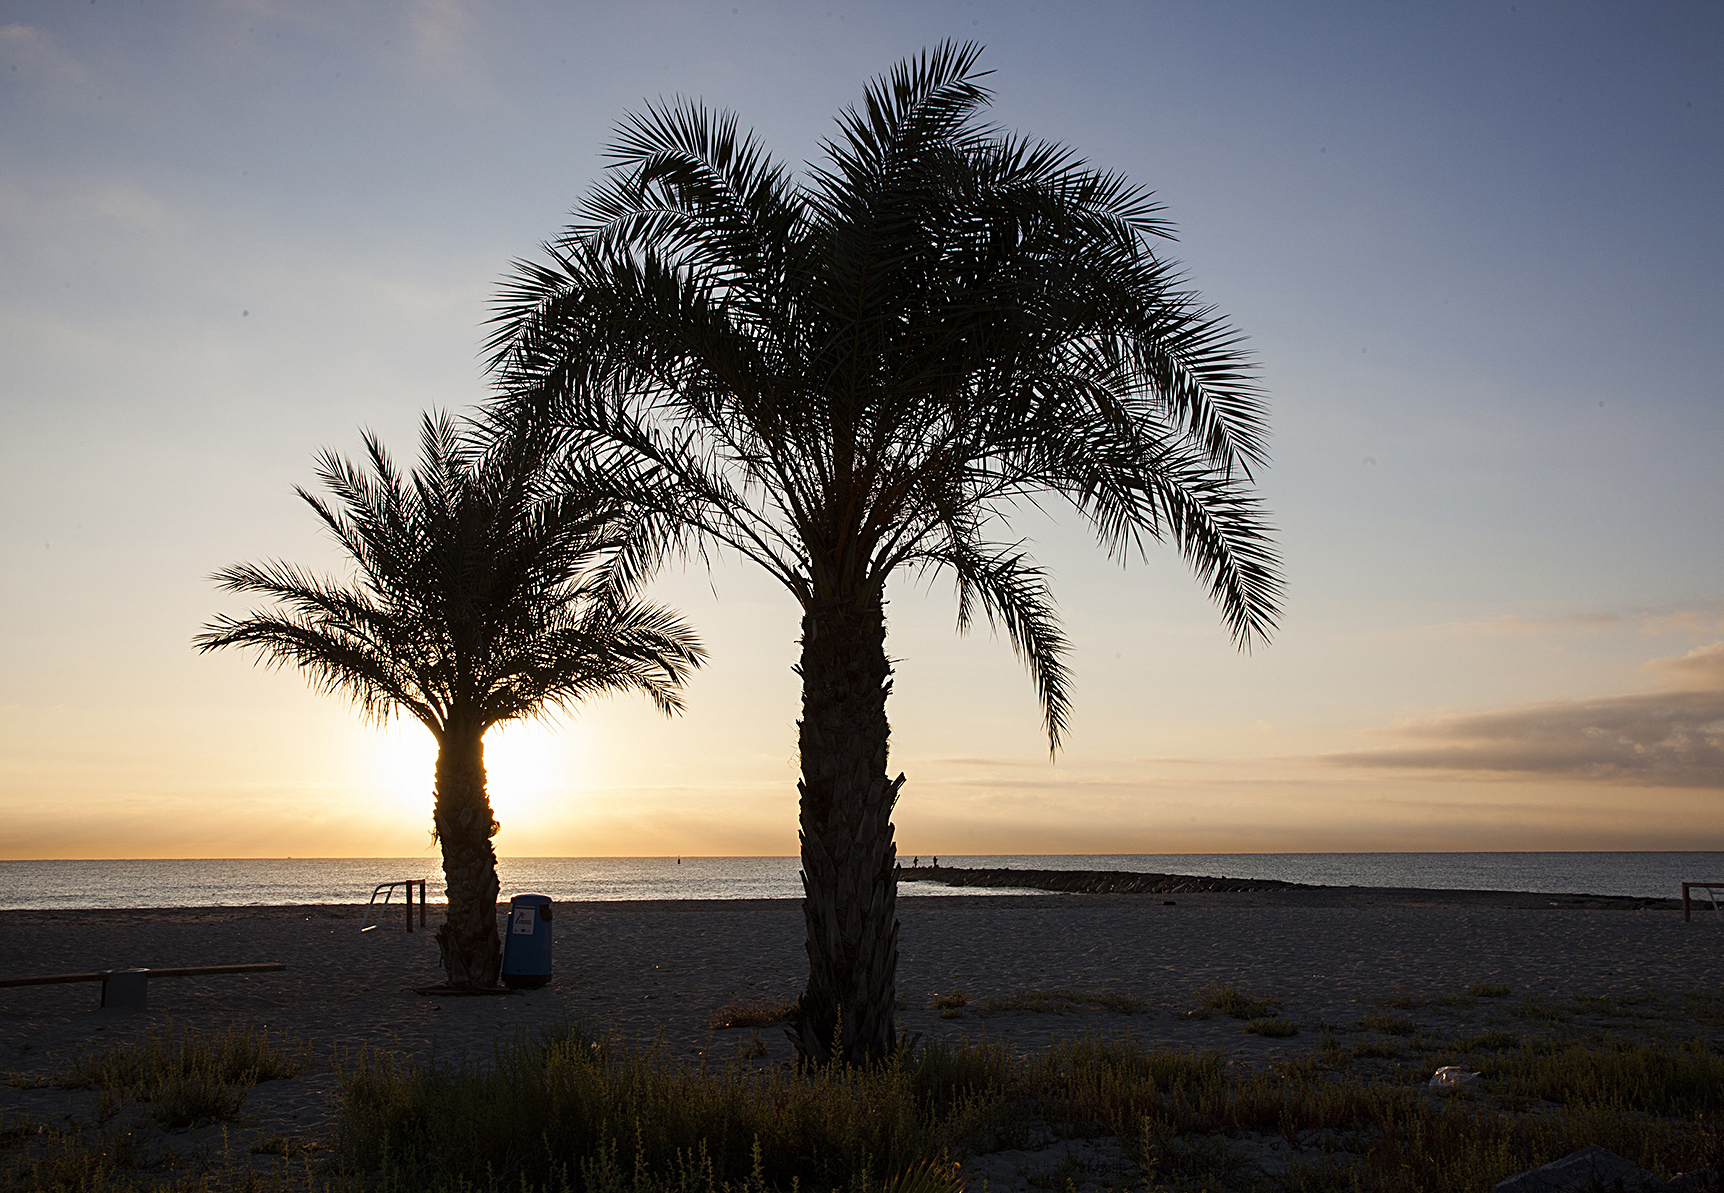 Imagen del bello atardecer en la playa de Benafel, que por segundo ao lucir la bandera azul.